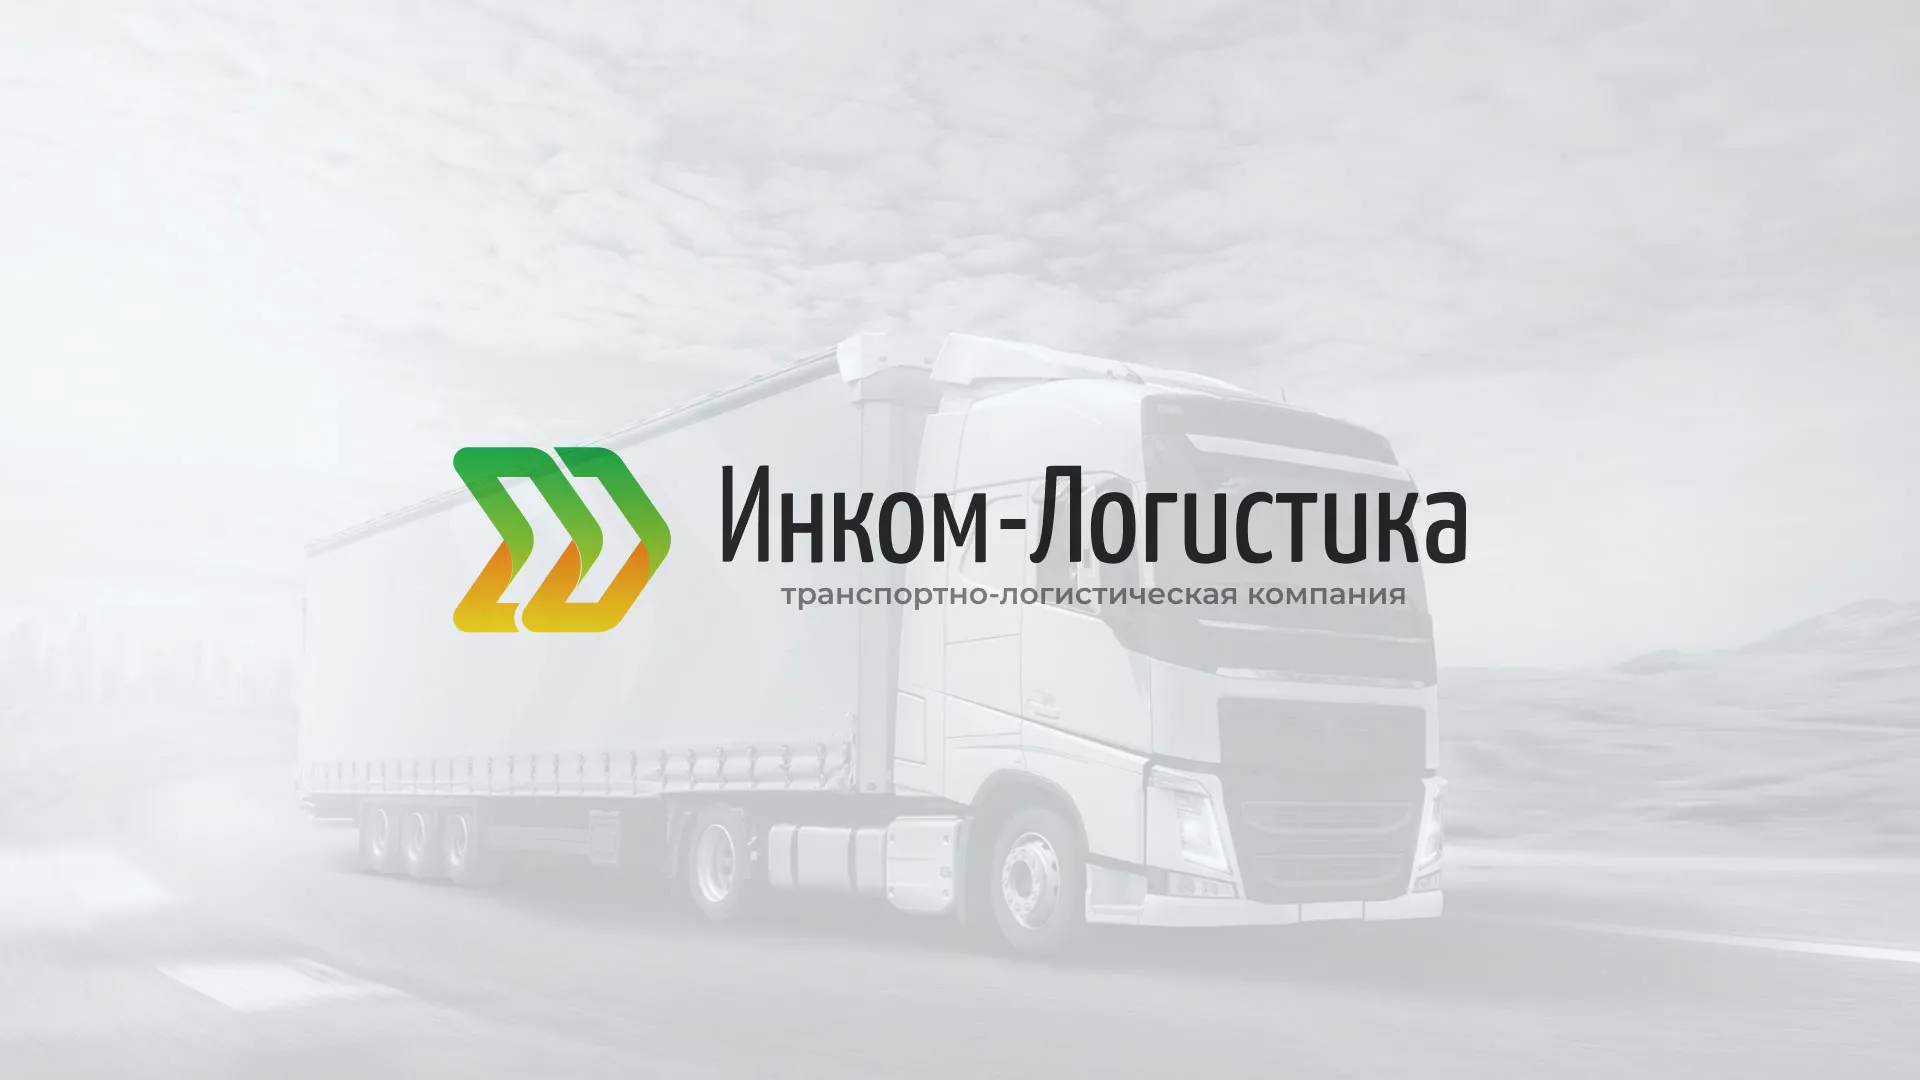 Разработка логотипа и сайта компании «Инком-Логистика» в Георгиевске